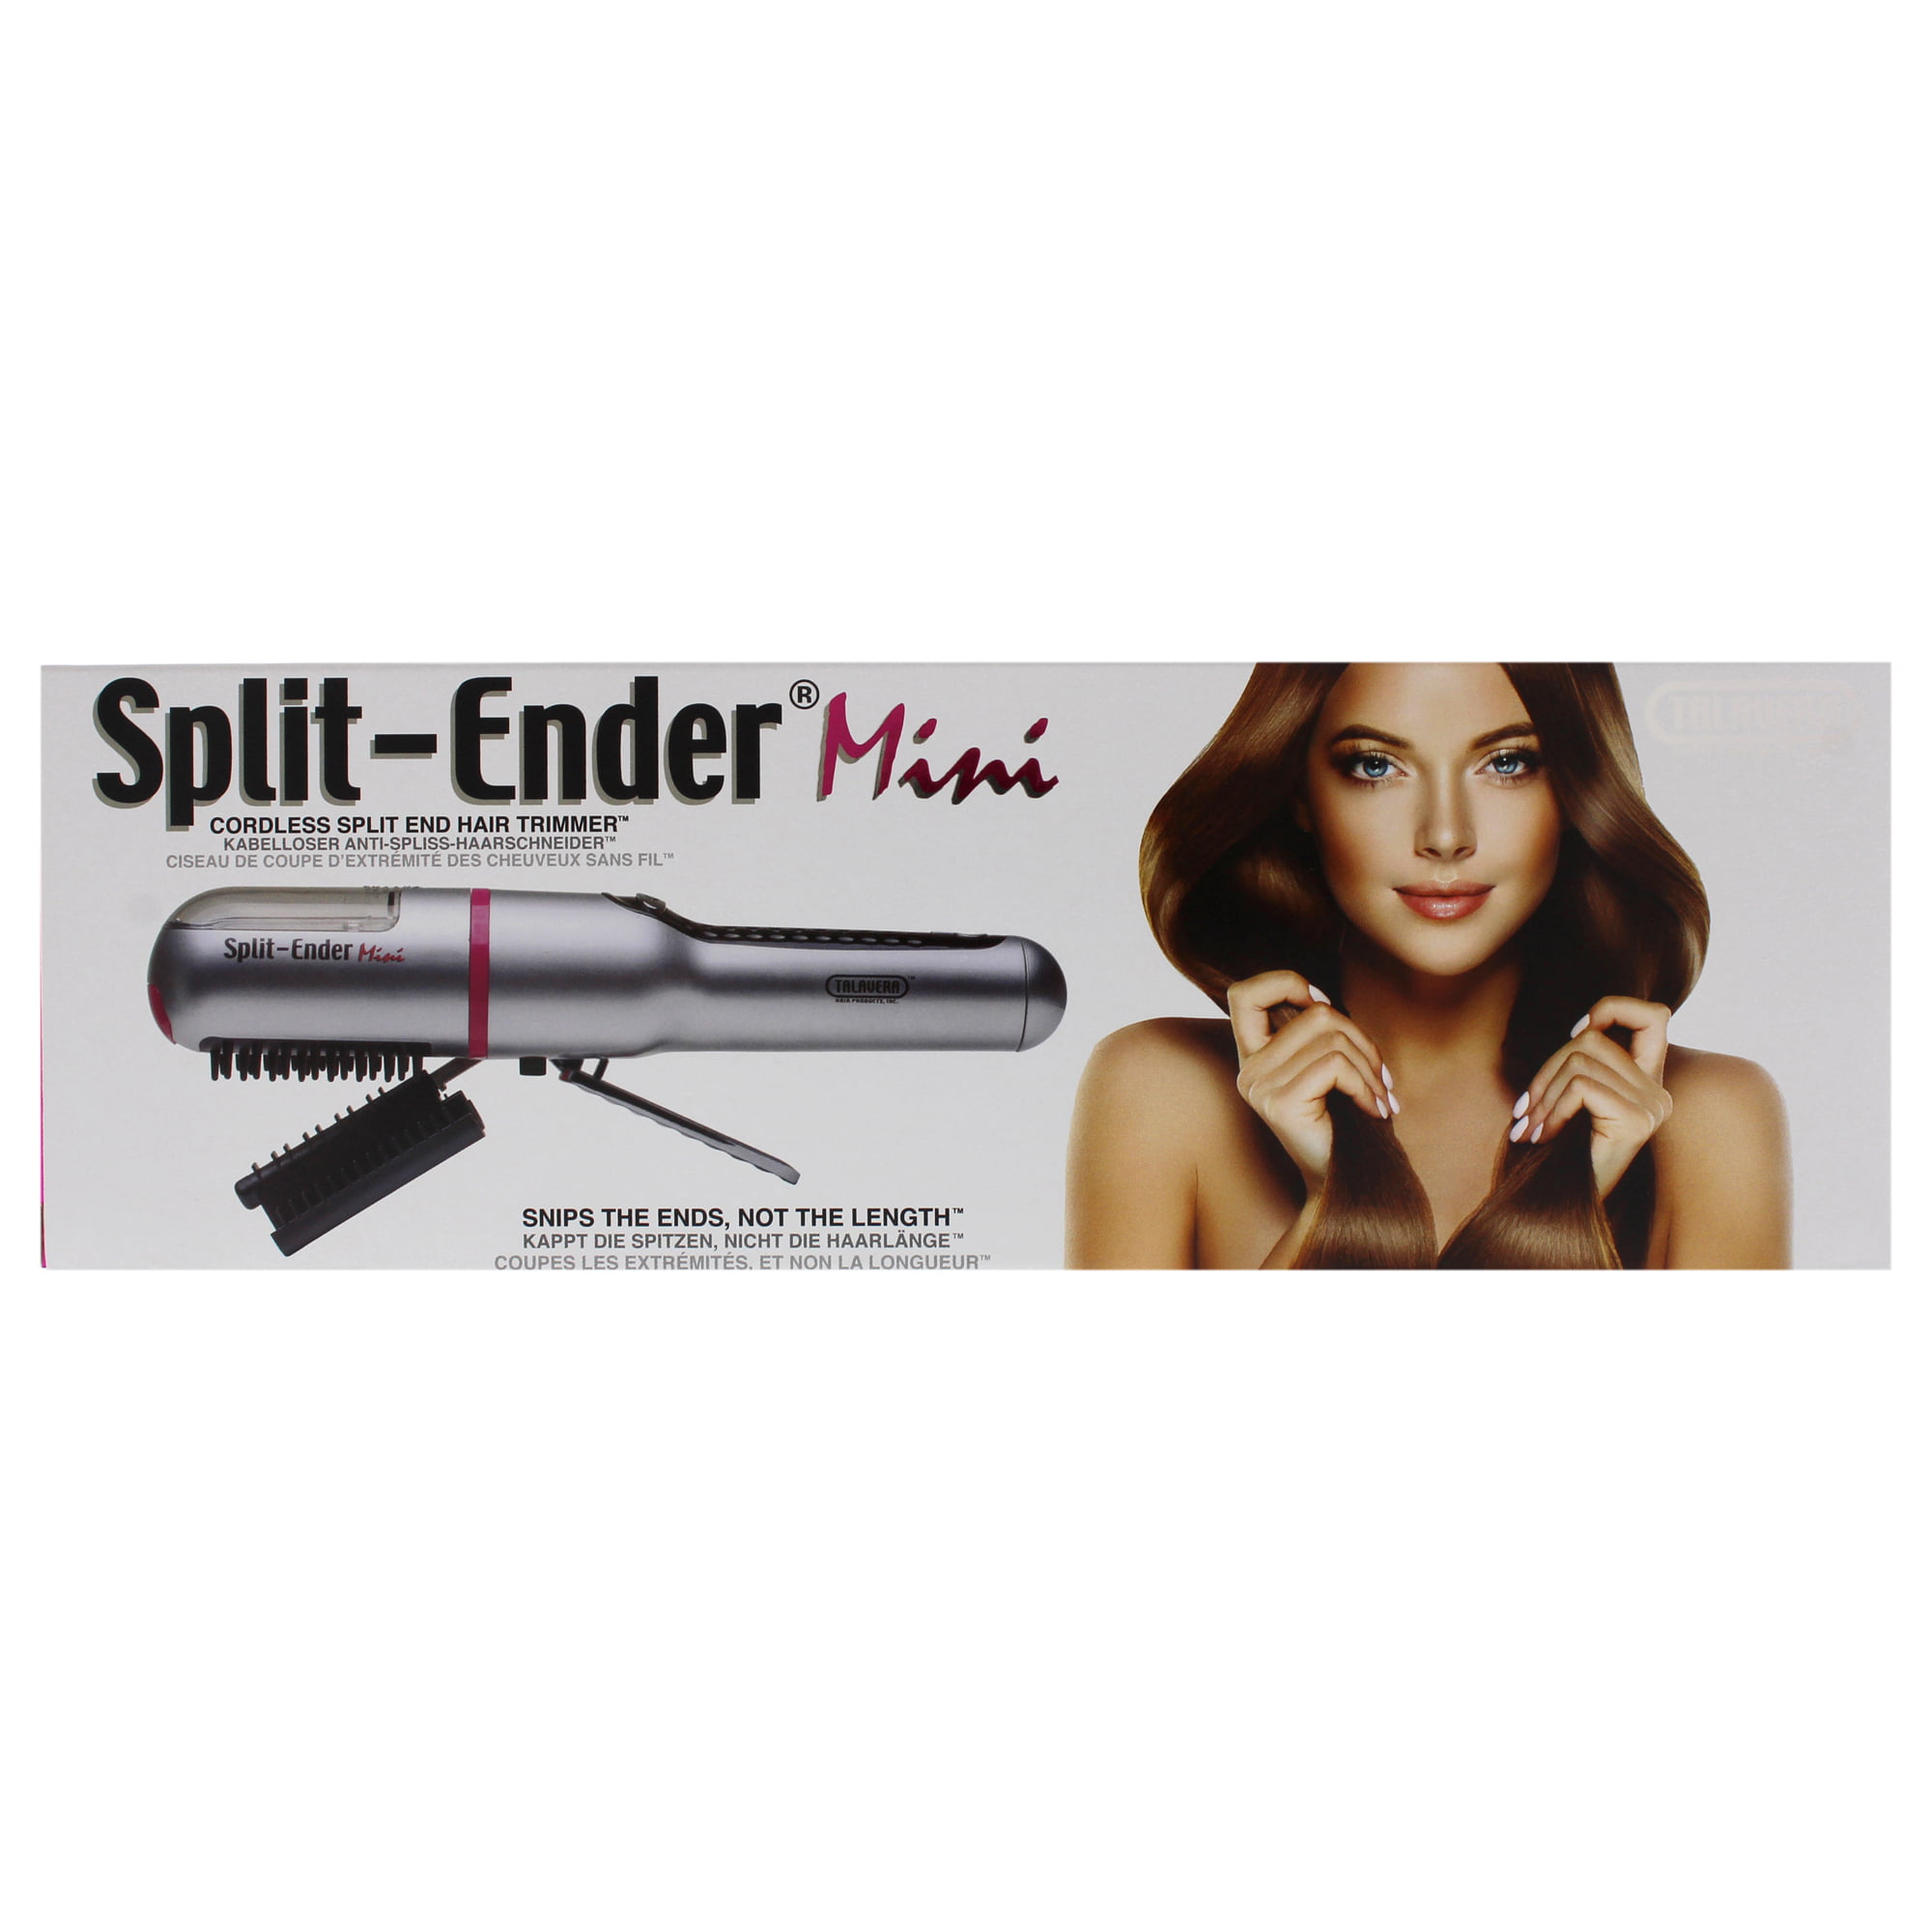 Split Ender Mini - $10 OFF, Portable Tool For Split Ends